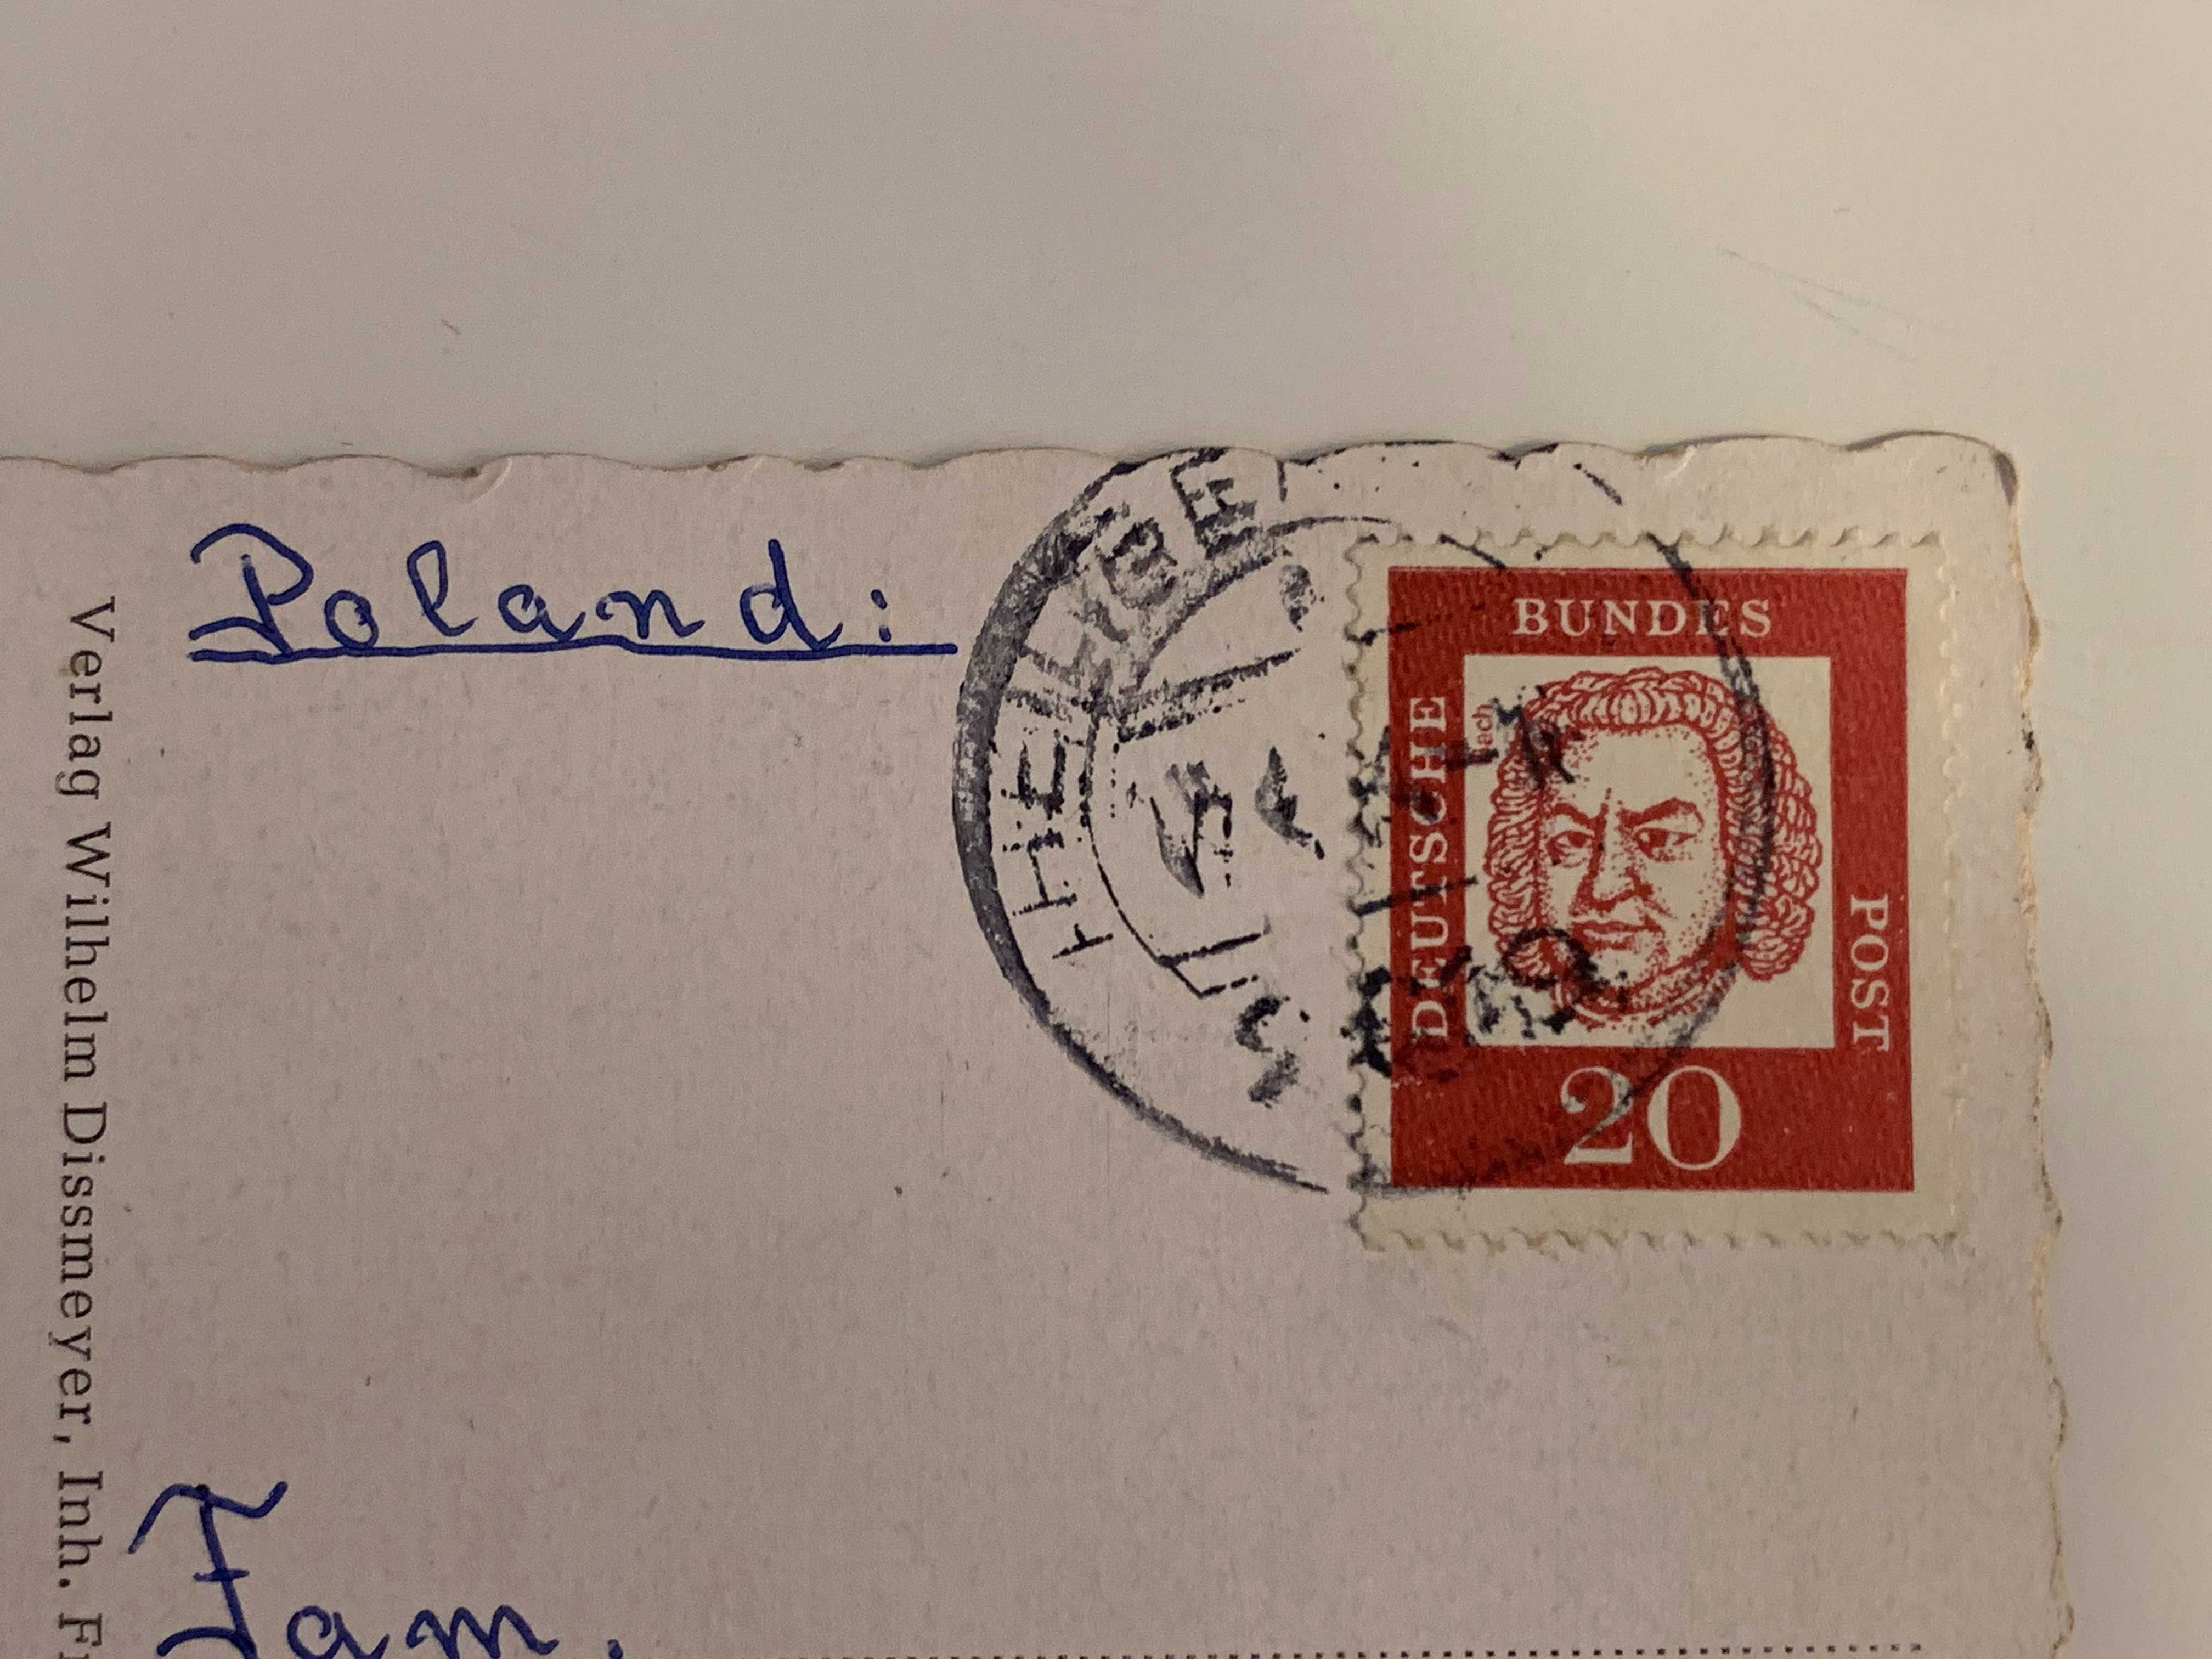 3 stare pocztówki , powojenne